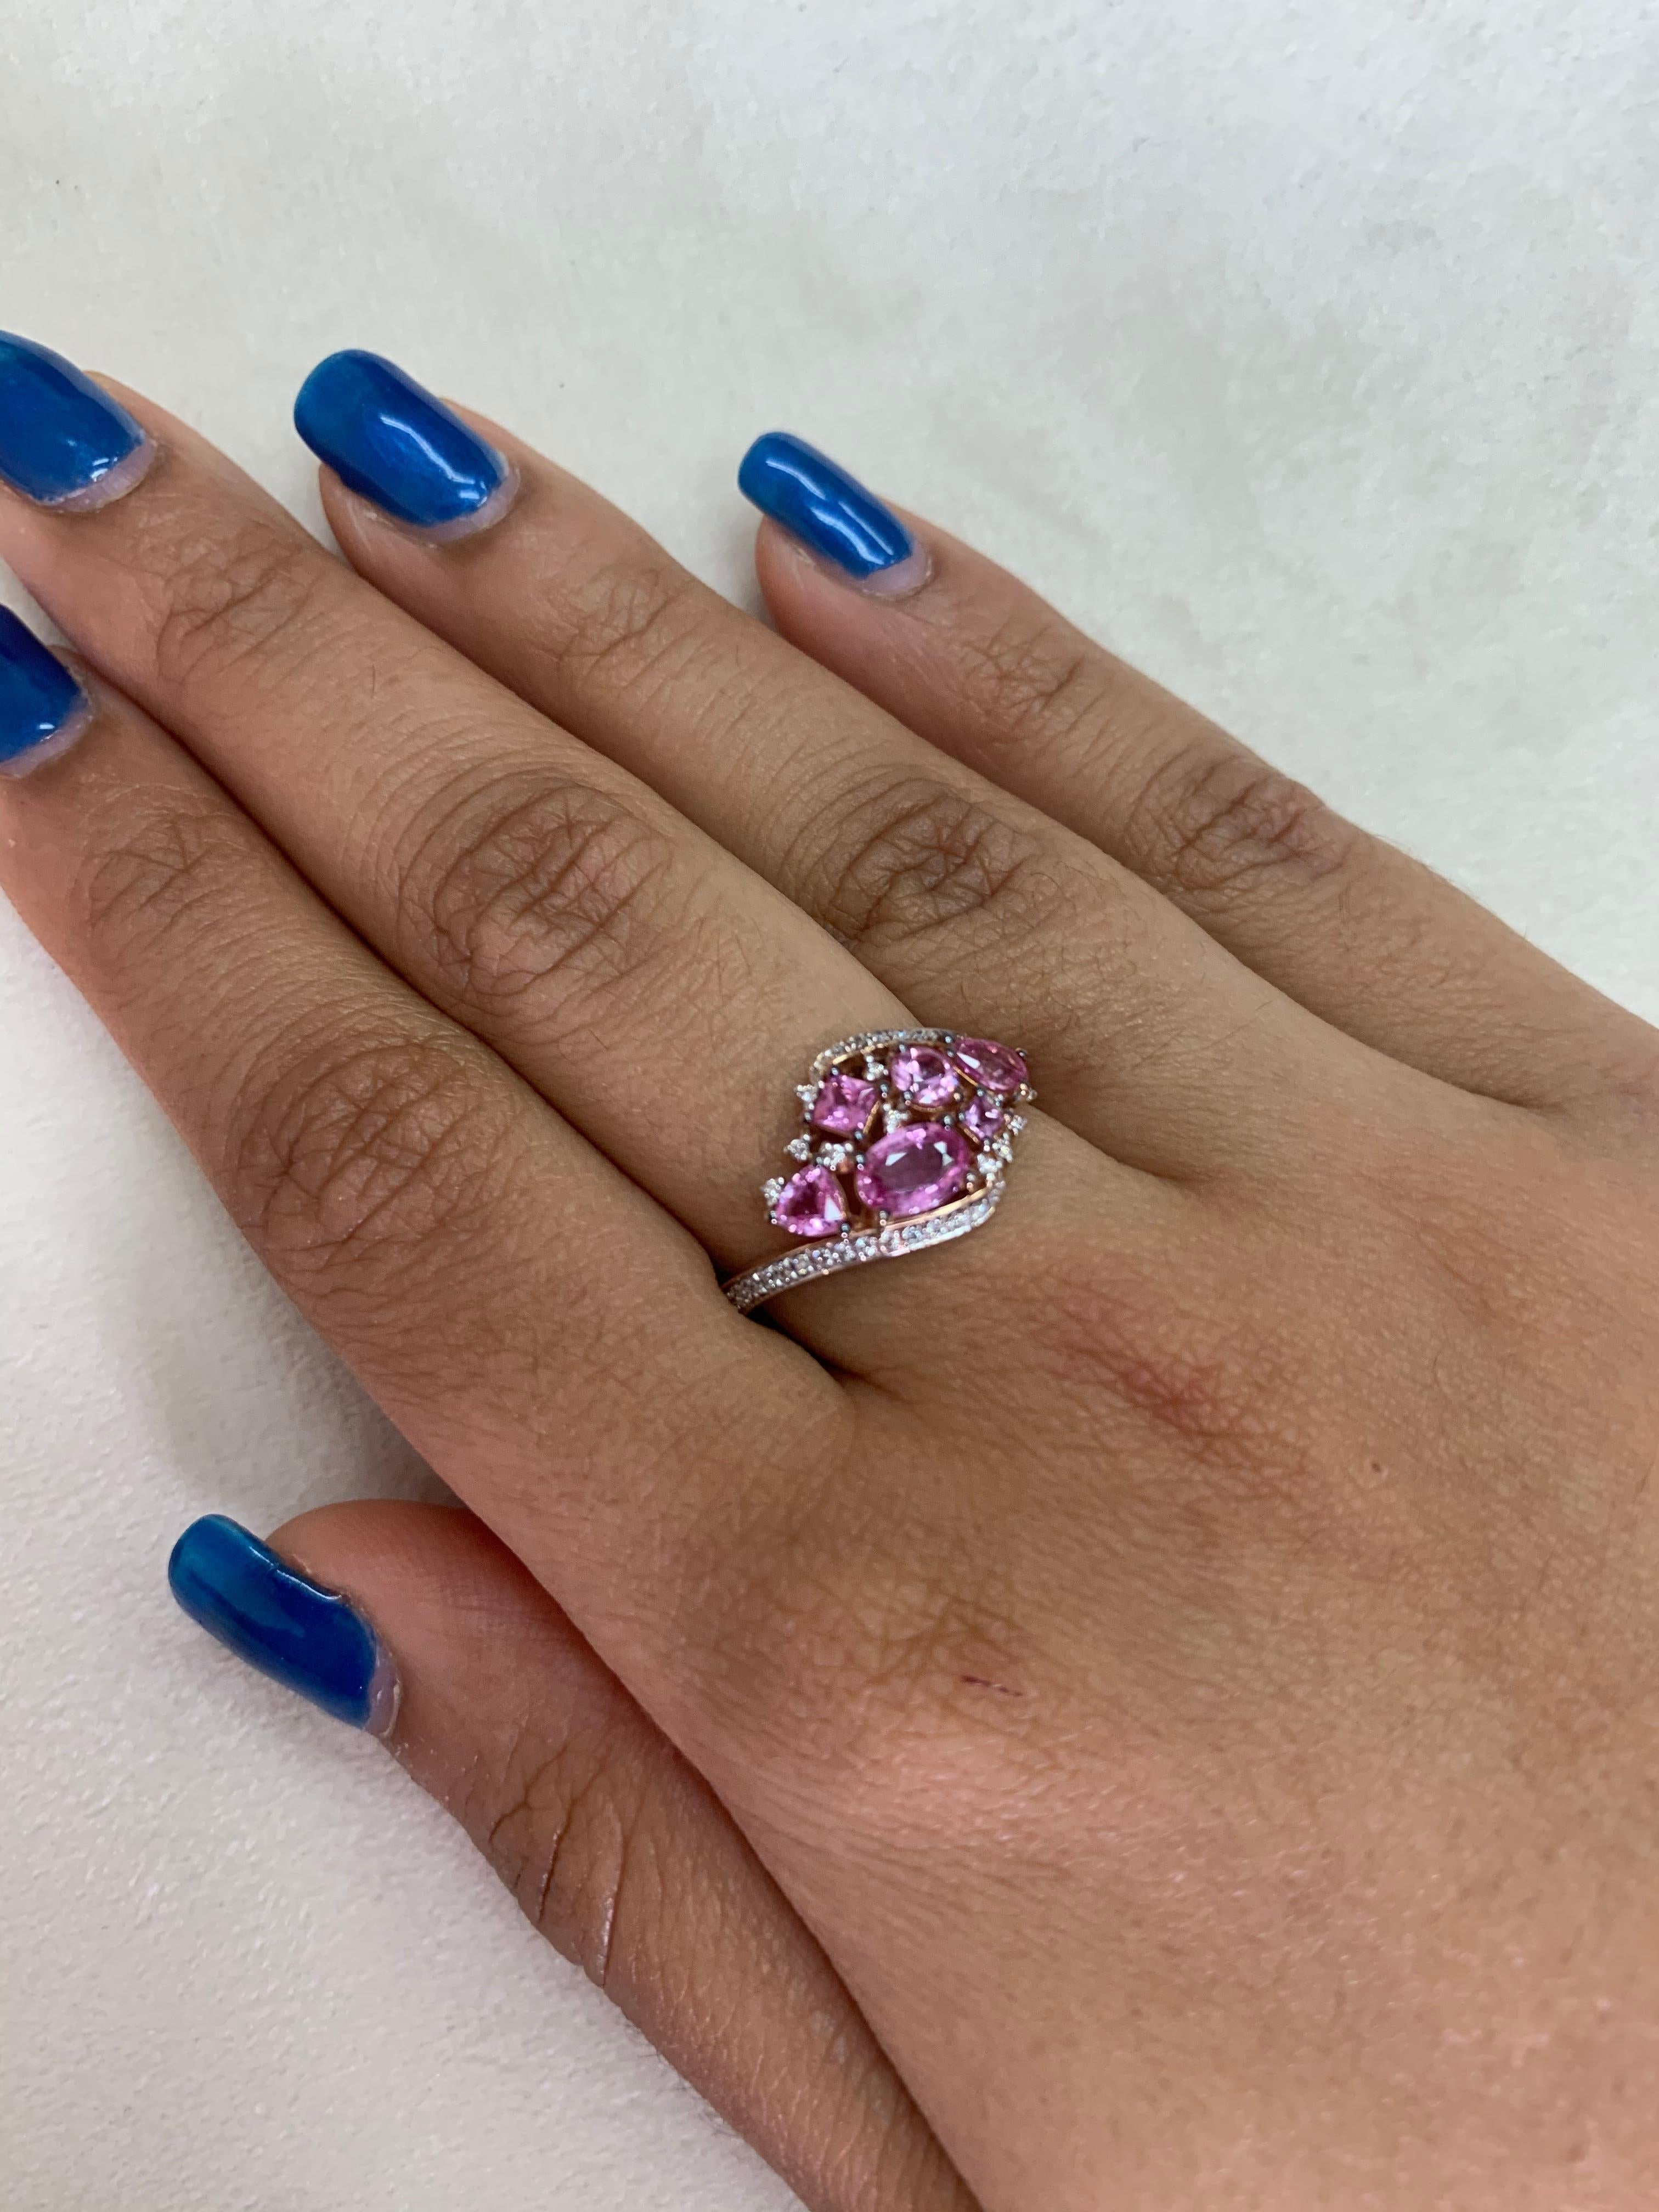 Sunita Nahata präsentiert eine exklusive Kollektion von Ringen aus rosa Saphiren. Mit einer Mischung aus floralen Designs und Cluster-Fassungen werden diese Stücke mit Diamanten akzentuiert, um eine einzigartige Reihe von Ringen zu präsentieren.